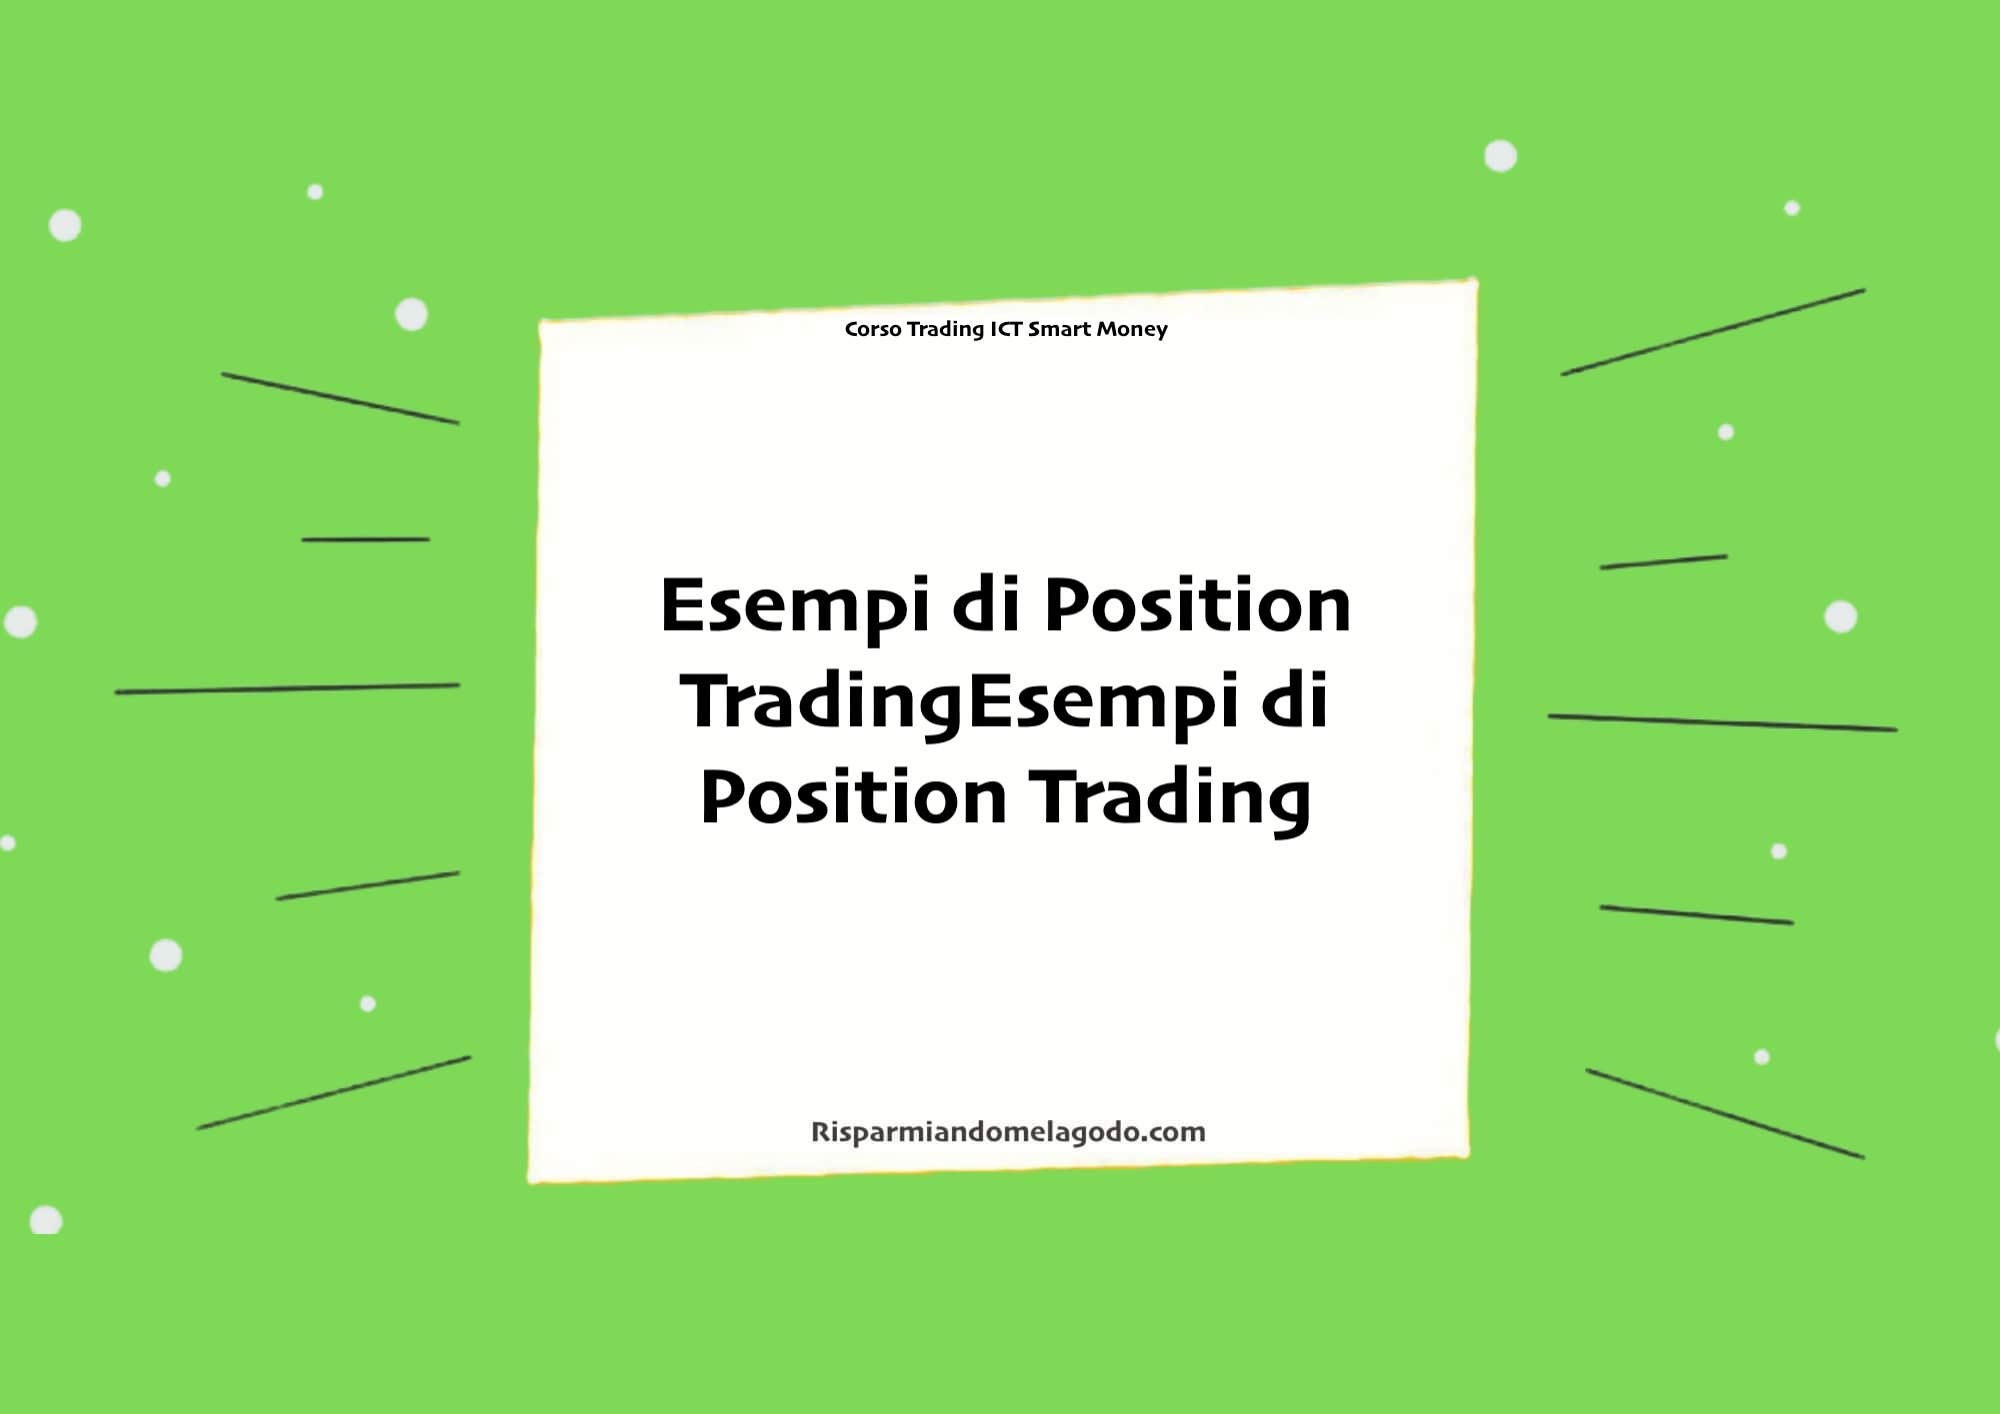 Esempi di Position Trading